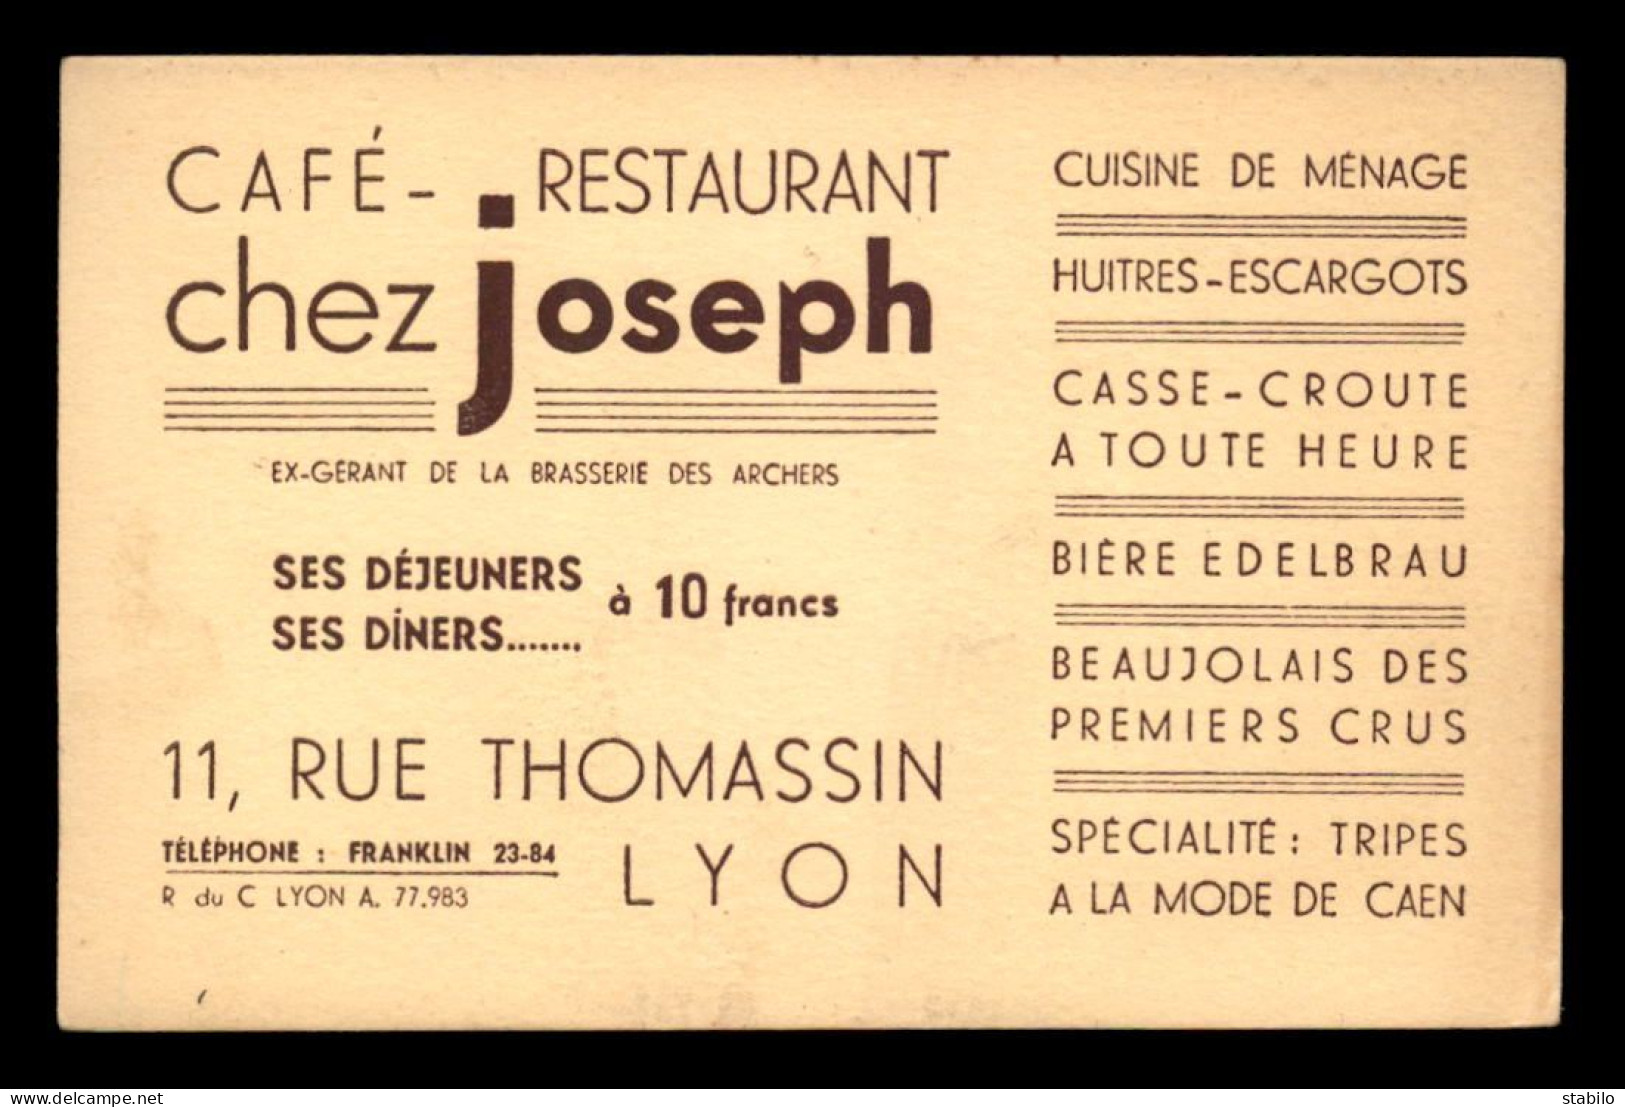 CARTE DE VISITE - CAFE-RESTAURANT "CHEZ JOSEPH" 11 RUE THOMASSIN, LYON - FORMAT 8.5 X 13 CM - Visitekaartjes